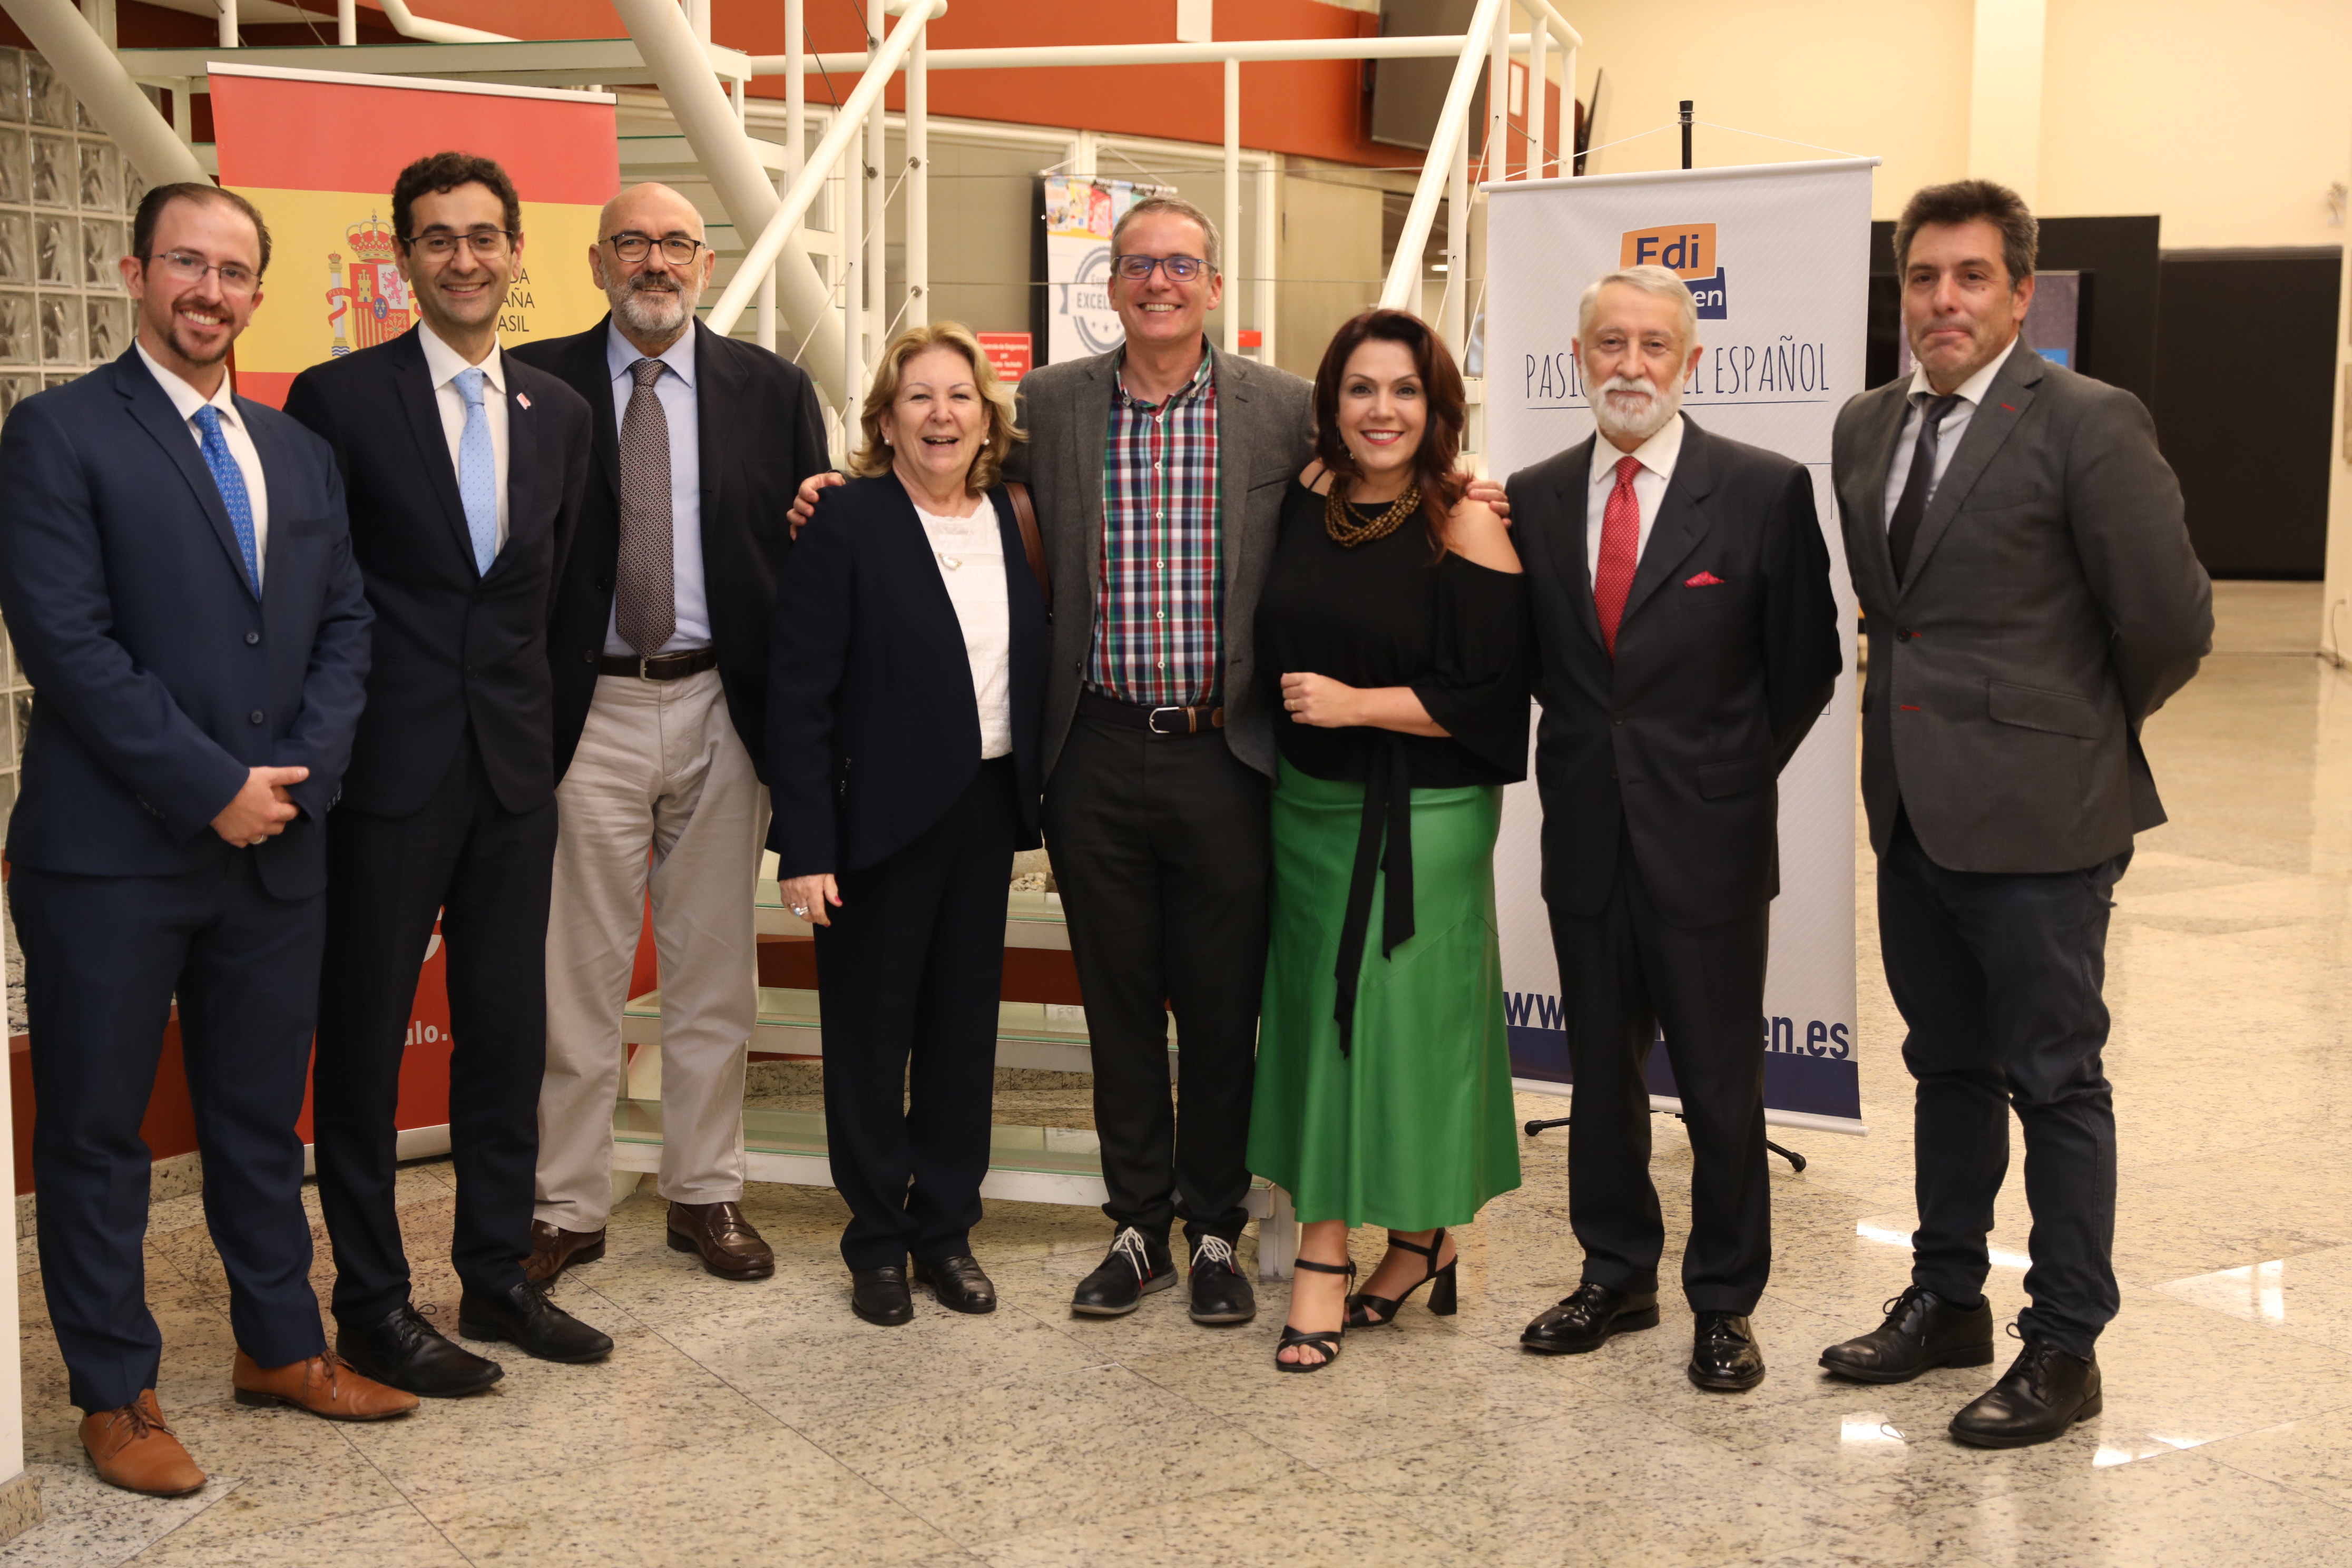 La Universidad de Salamanca amplía el Proyecto Español Excelente a centros de secundaria de Brasil